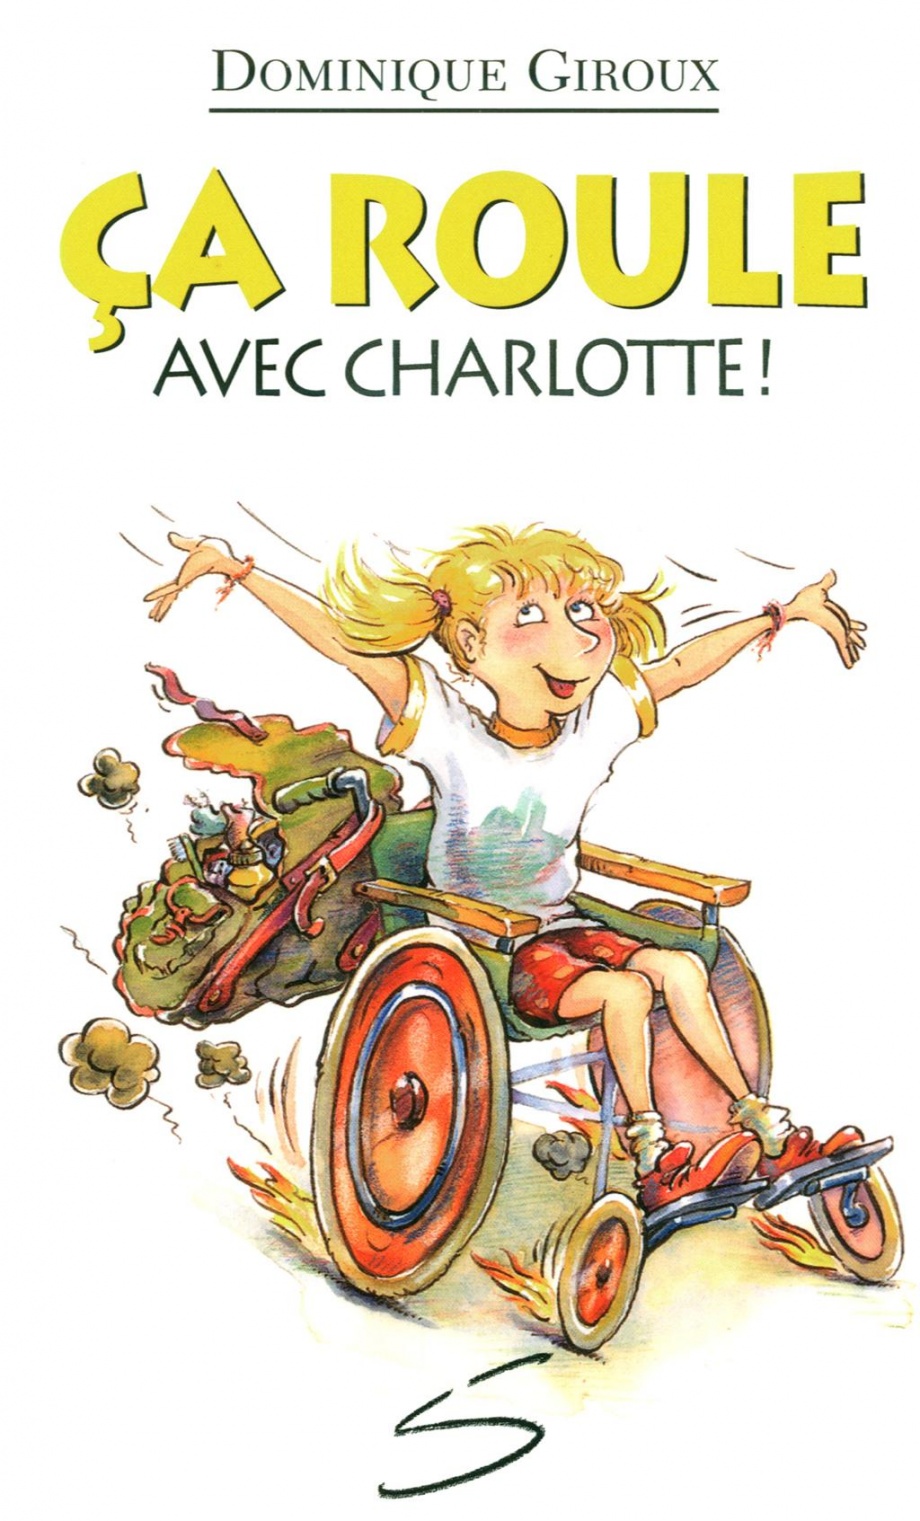 Description de l'image : Charlotte, en fauteuil roulant, dévale une côte, souriante et les bras dans les airs. En haut d'elle, on lit le titre : "Ça roule avec Charlotte!"